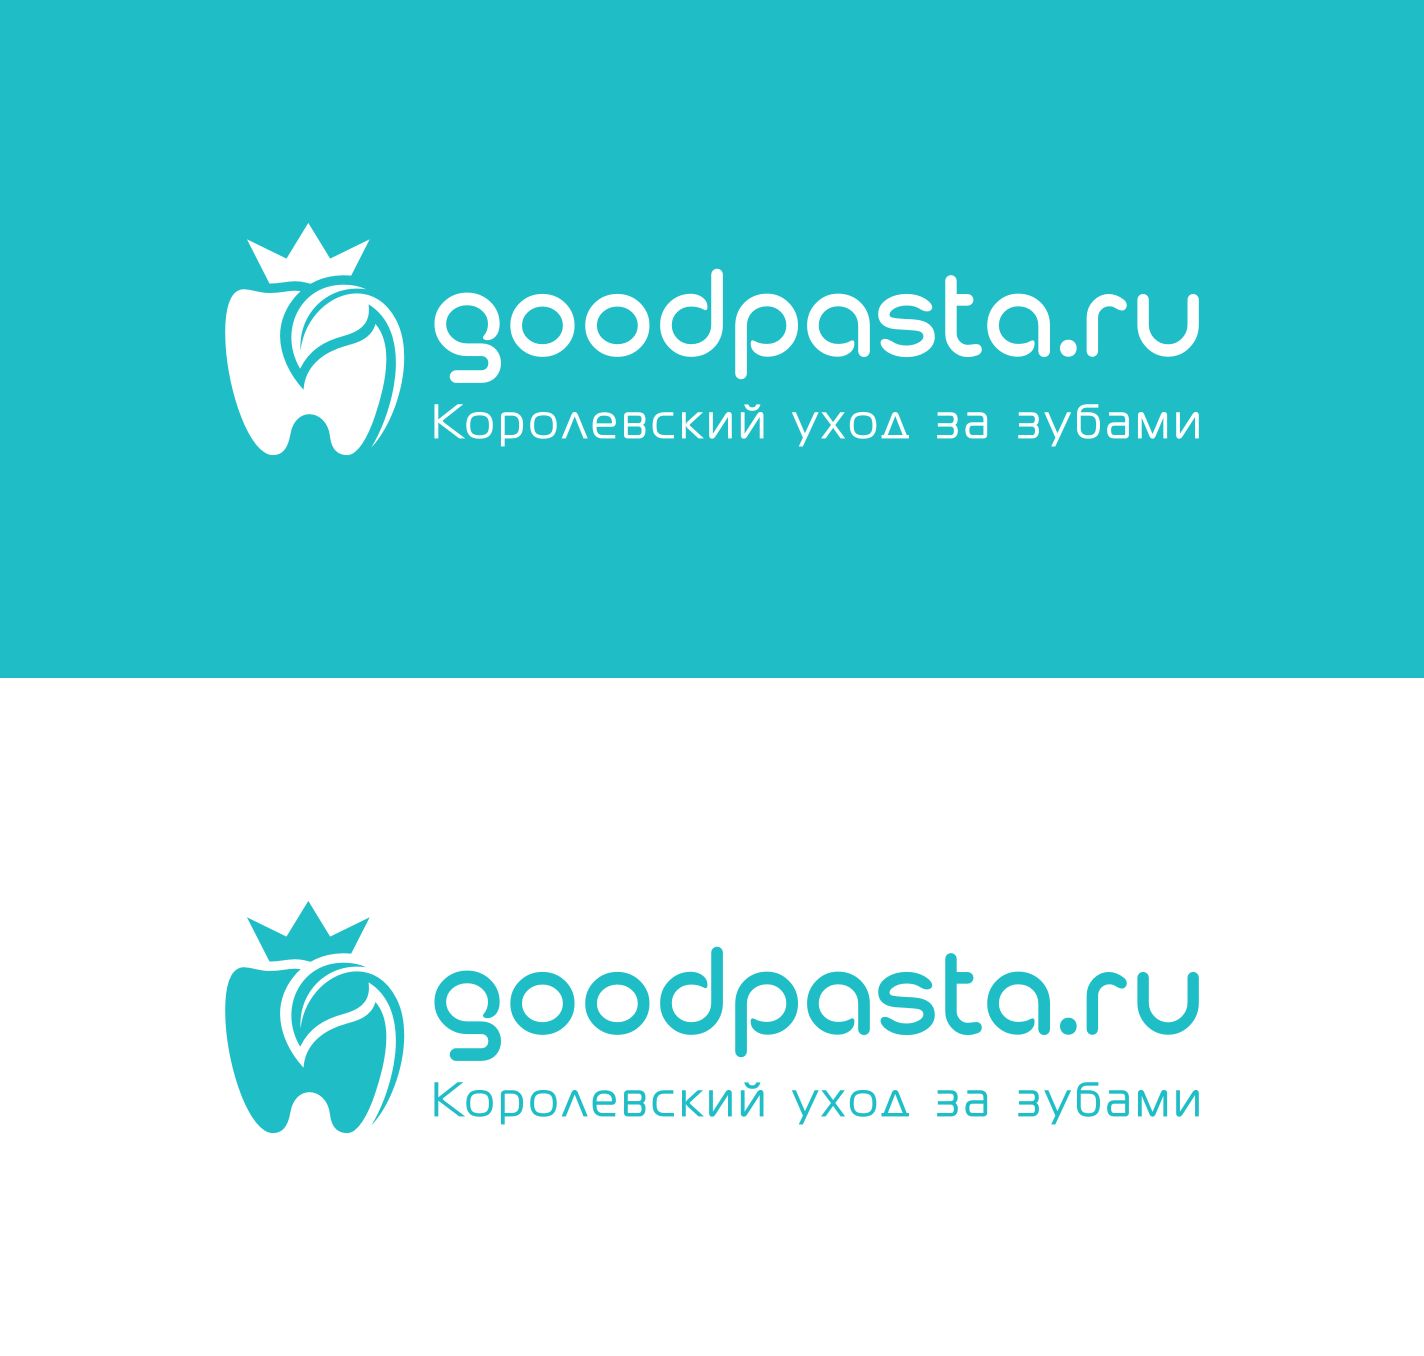 Логотип для интернет-магазина goodpasta.ru - дизайнер dima111